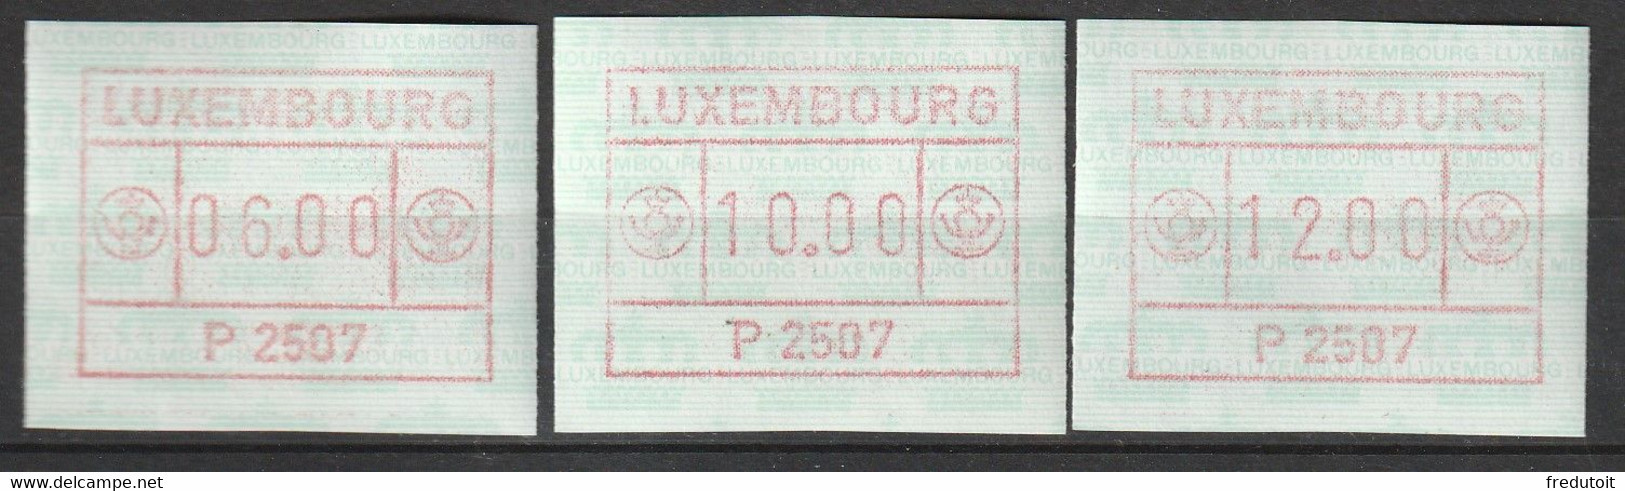 LUXEMBOURG - Timbres De Distributeurs - N°1 (1983) P2507 - Automatenmarken